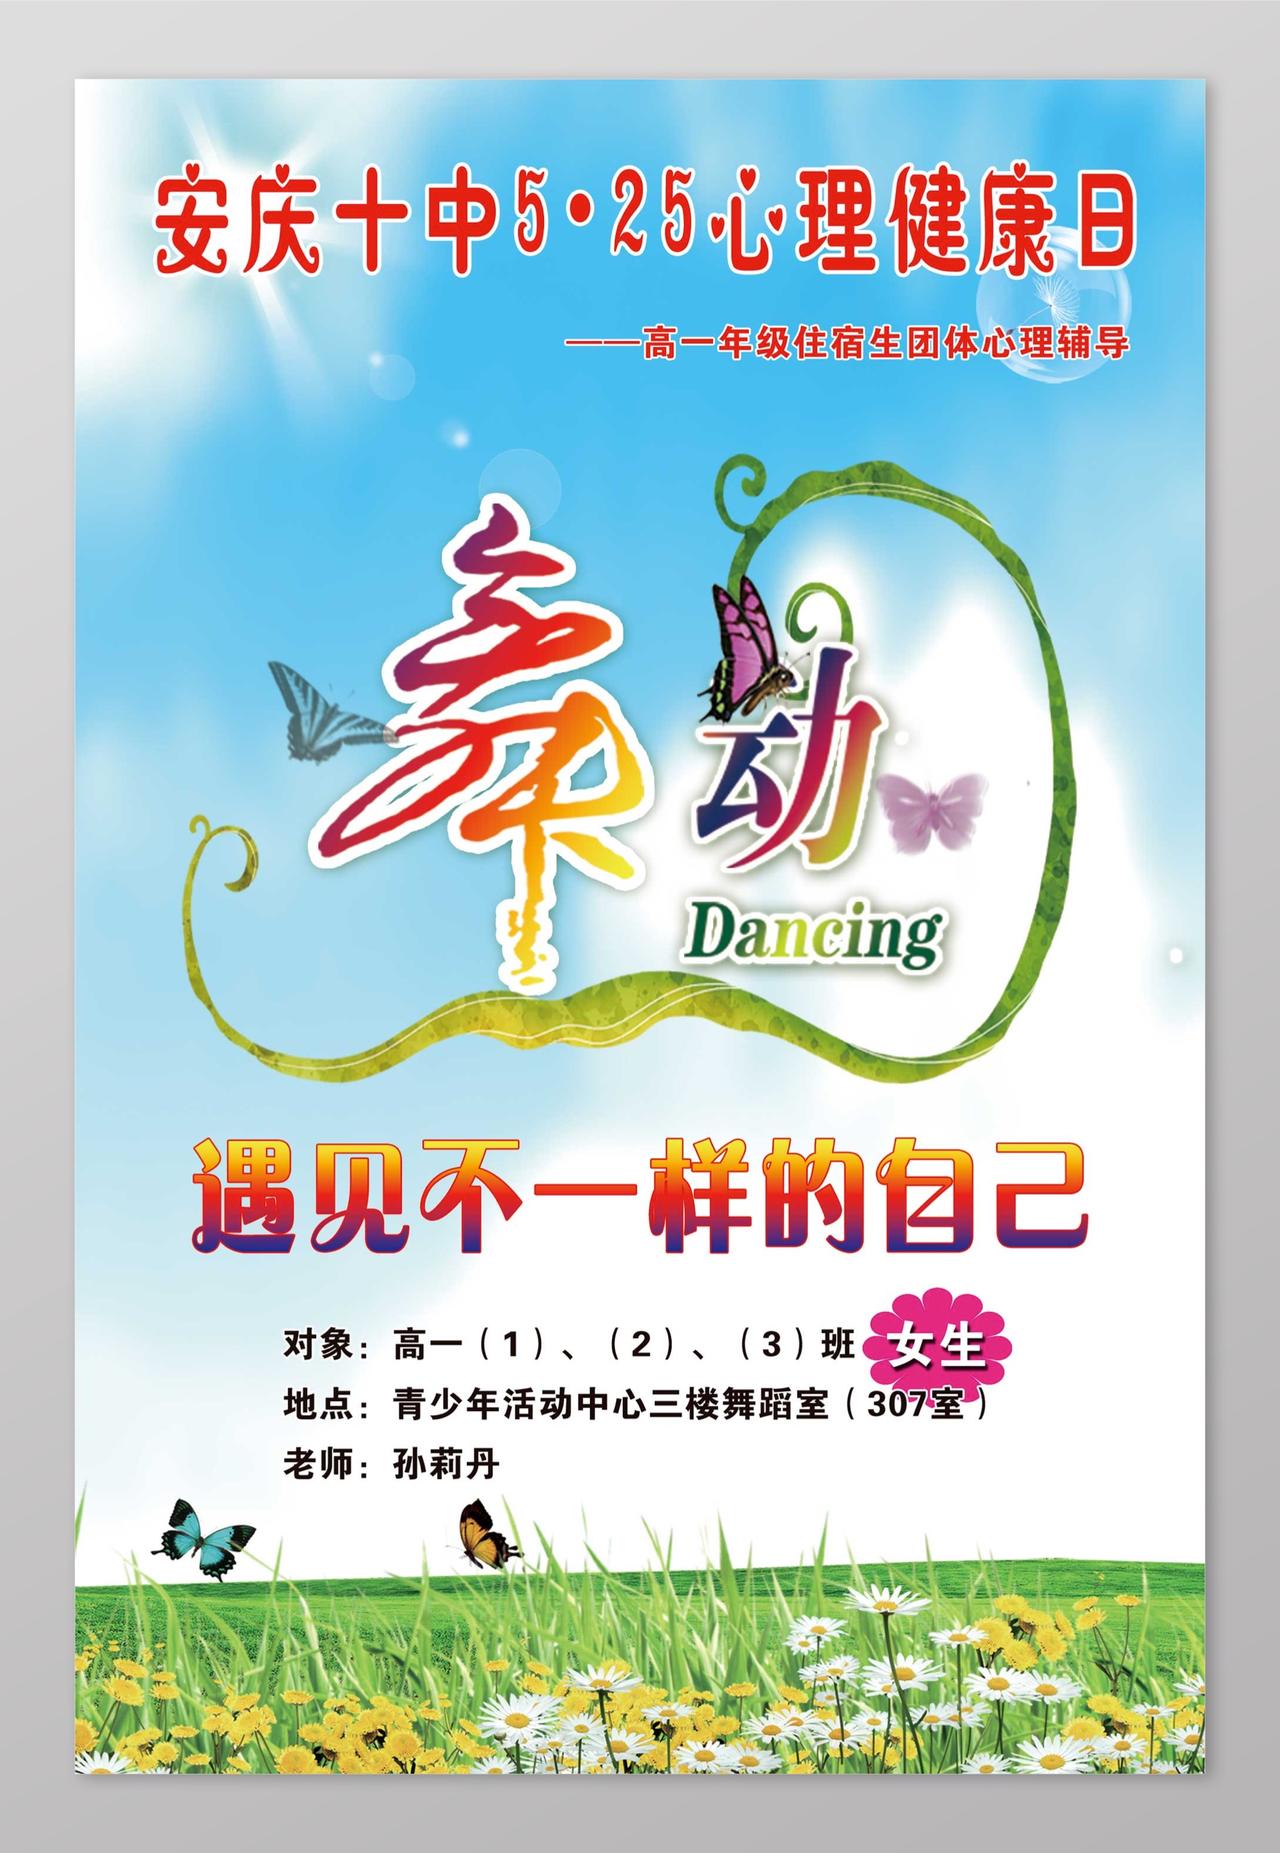 安庆十中心里健康日心理健康海报